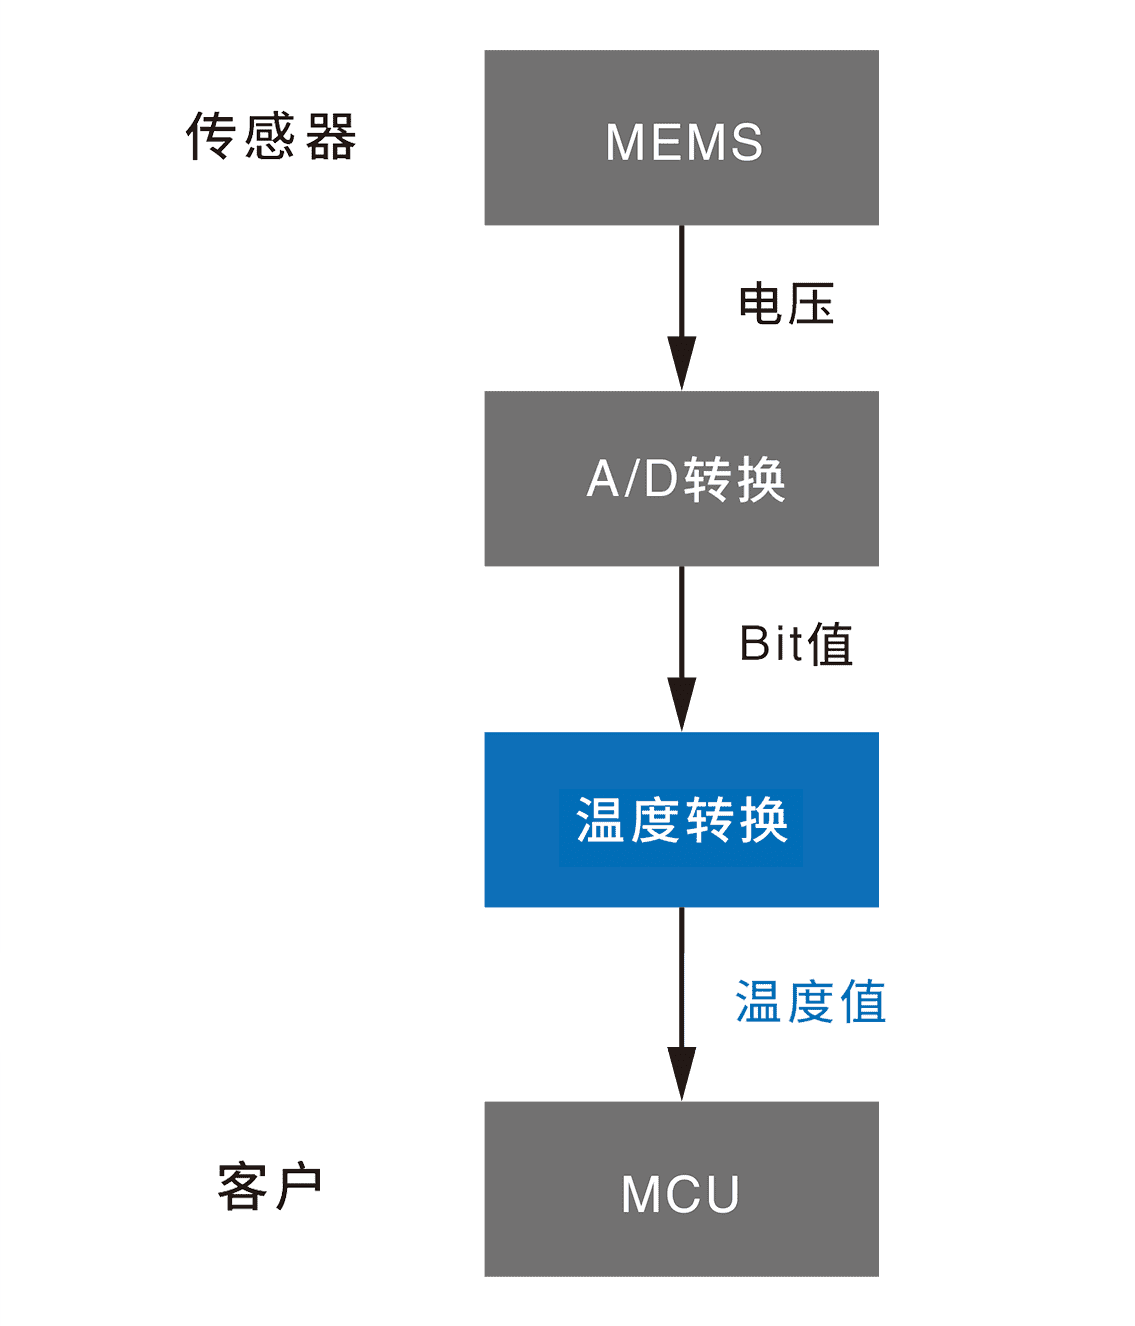 传感器 MEMS→(电压)→A/D转换→(Bit值)→温度変換→（温度转换）客户 MCU